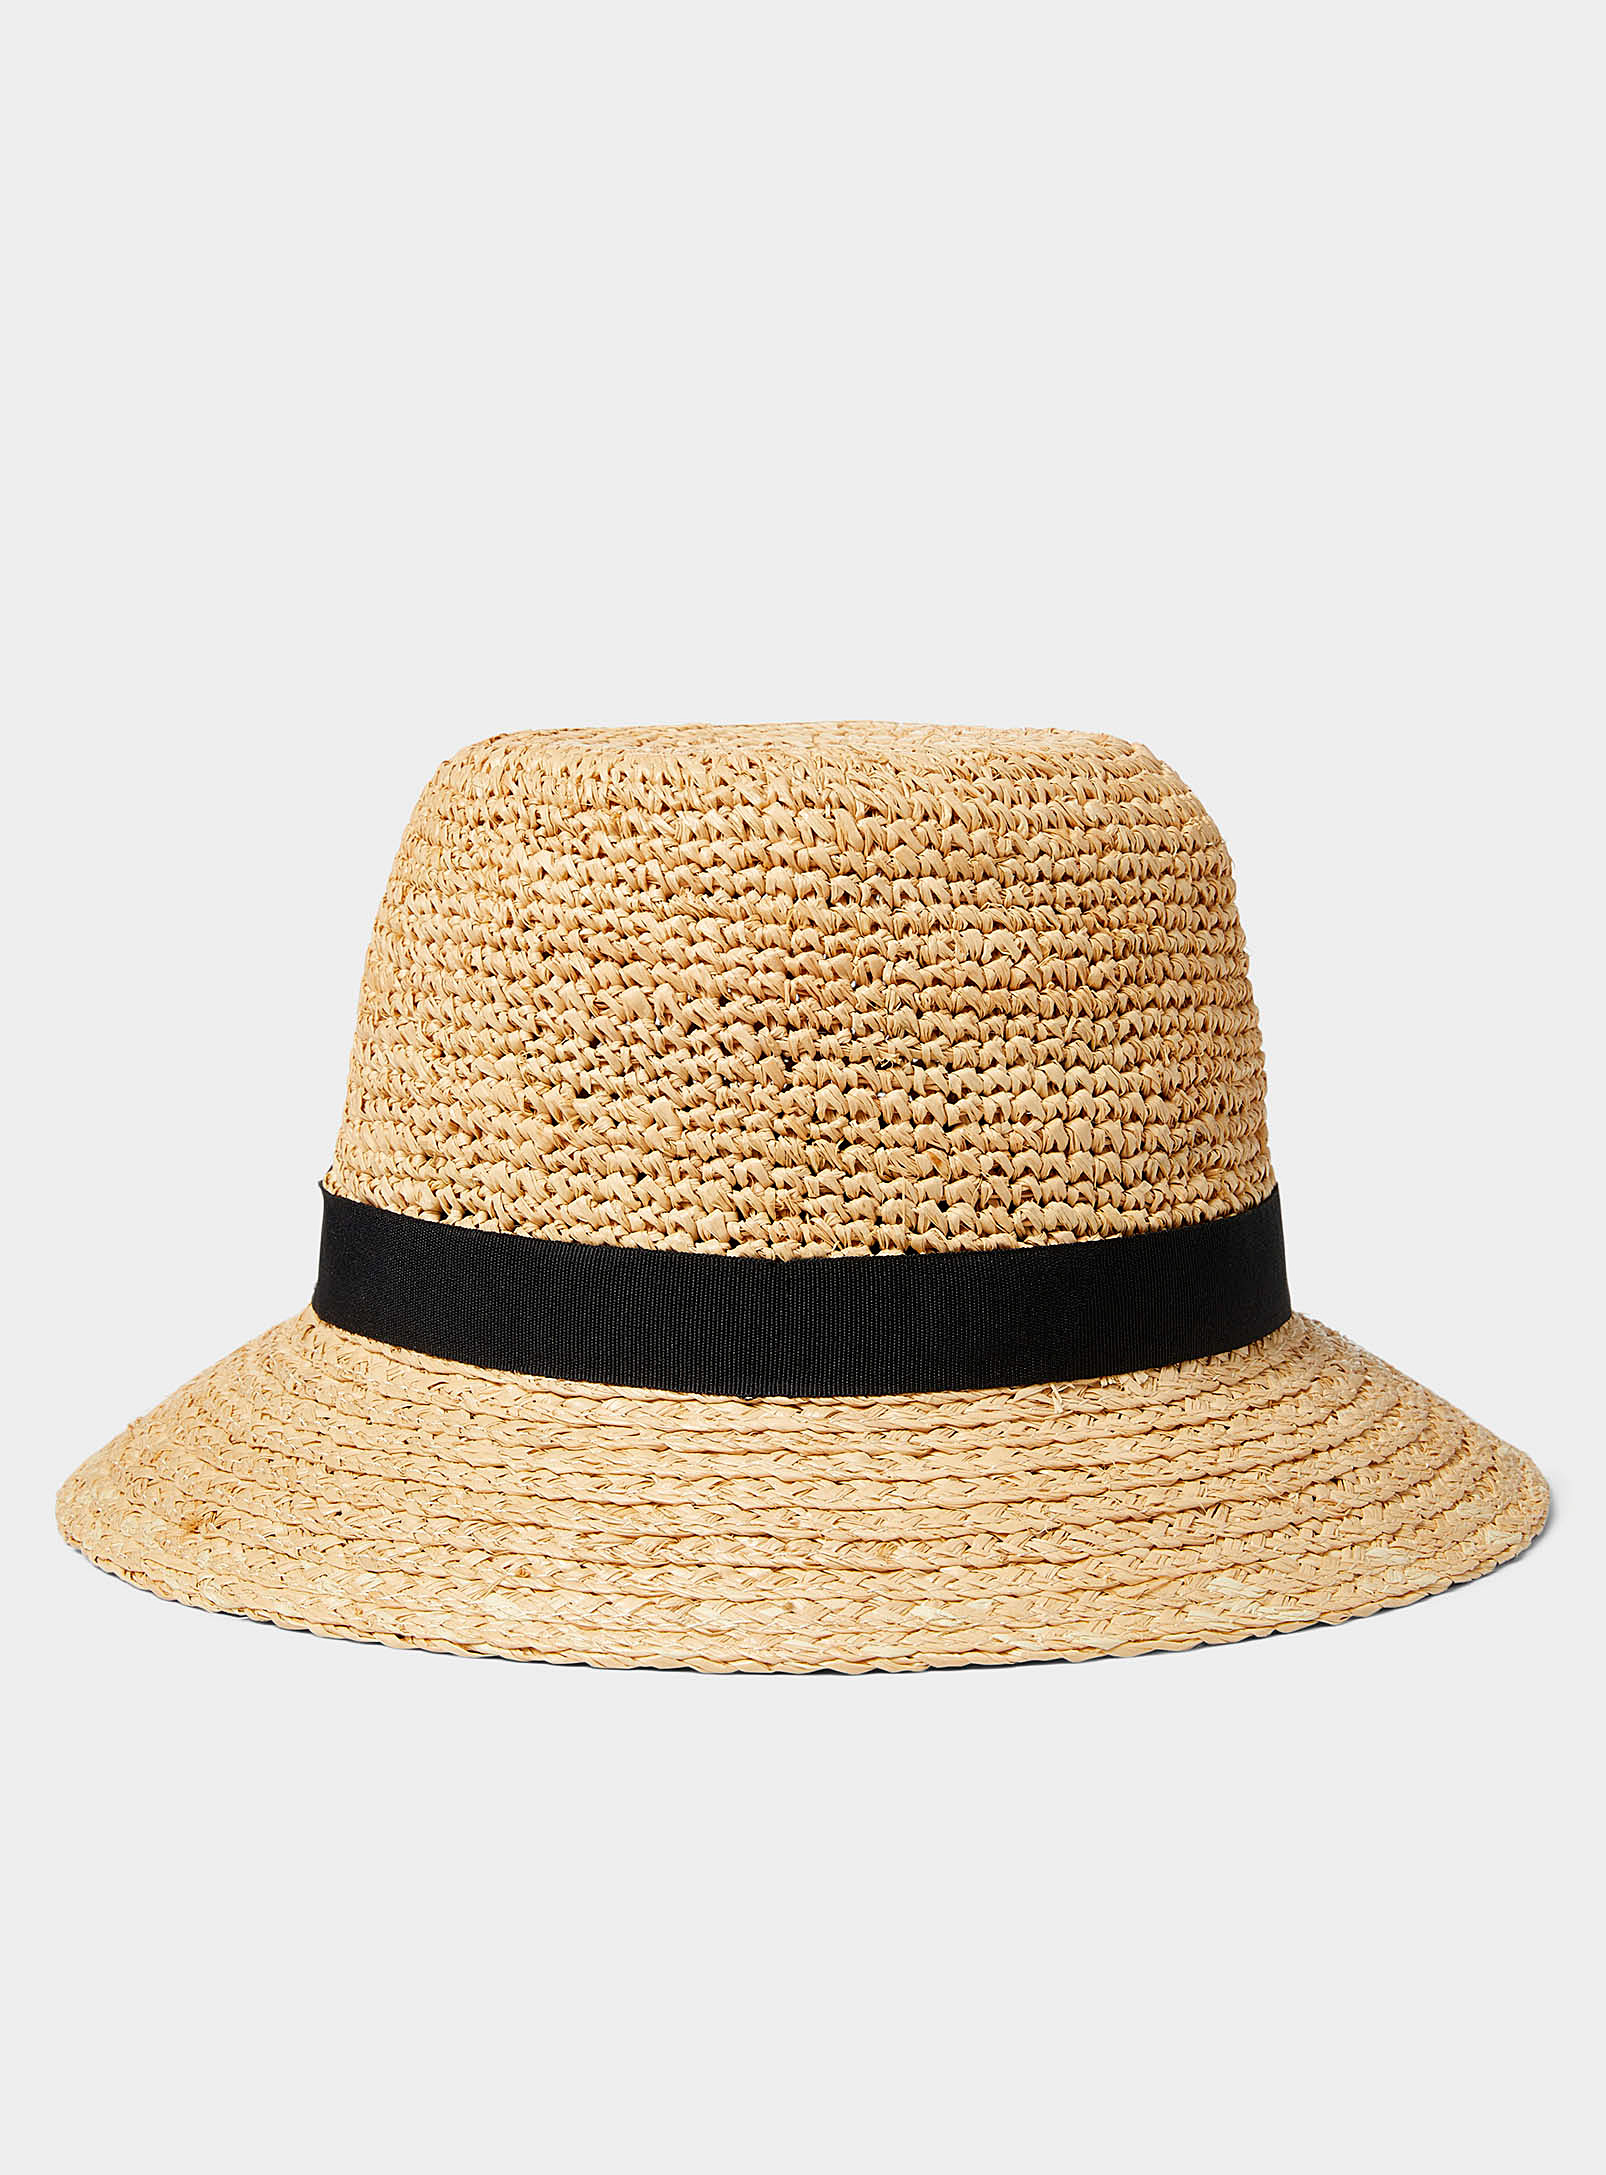 Canadian Hat Raffia Cloche Hat In Cream Beige